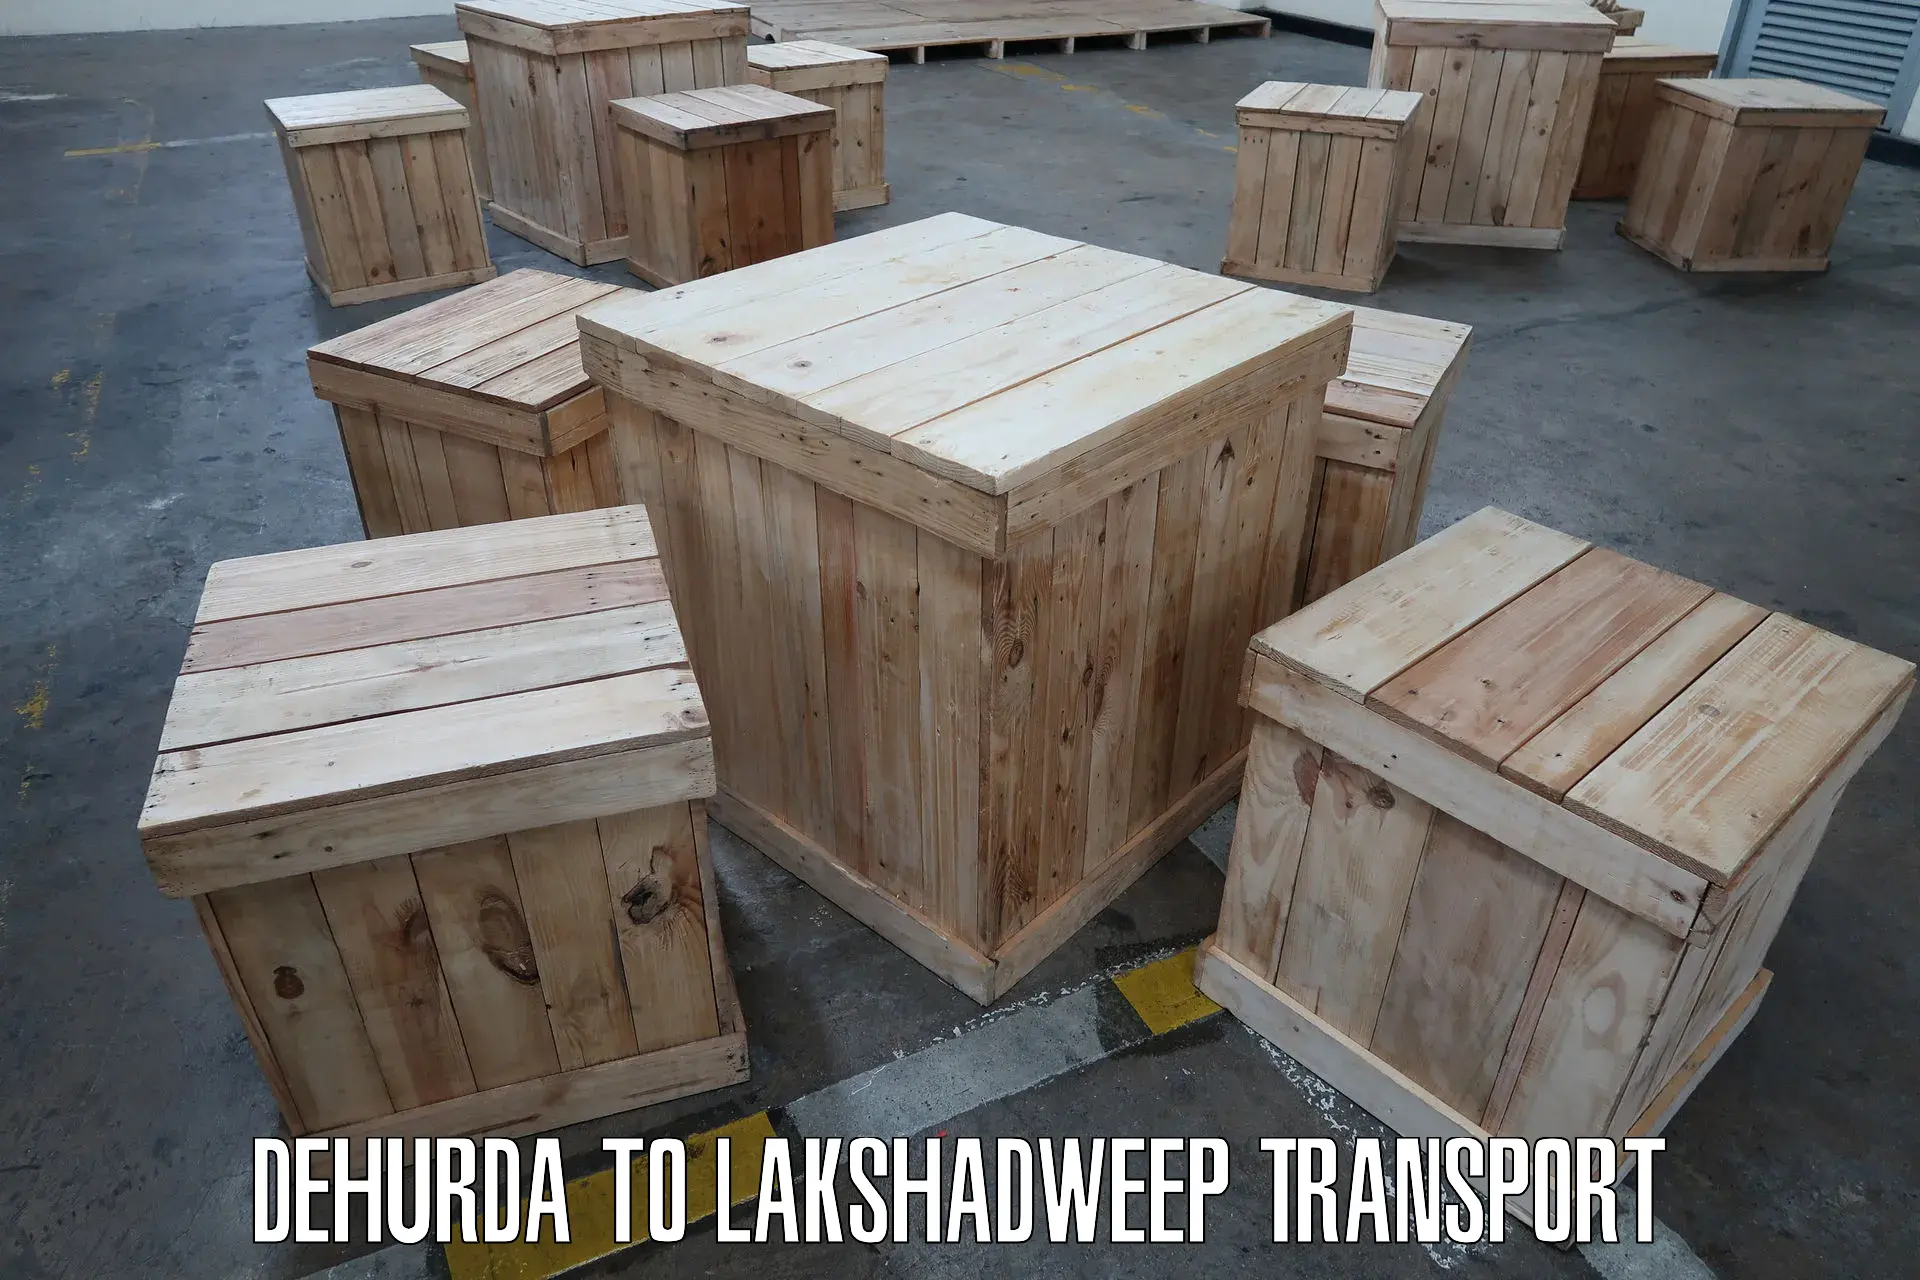 Road transport online services in Dehurda to Lakshadweep